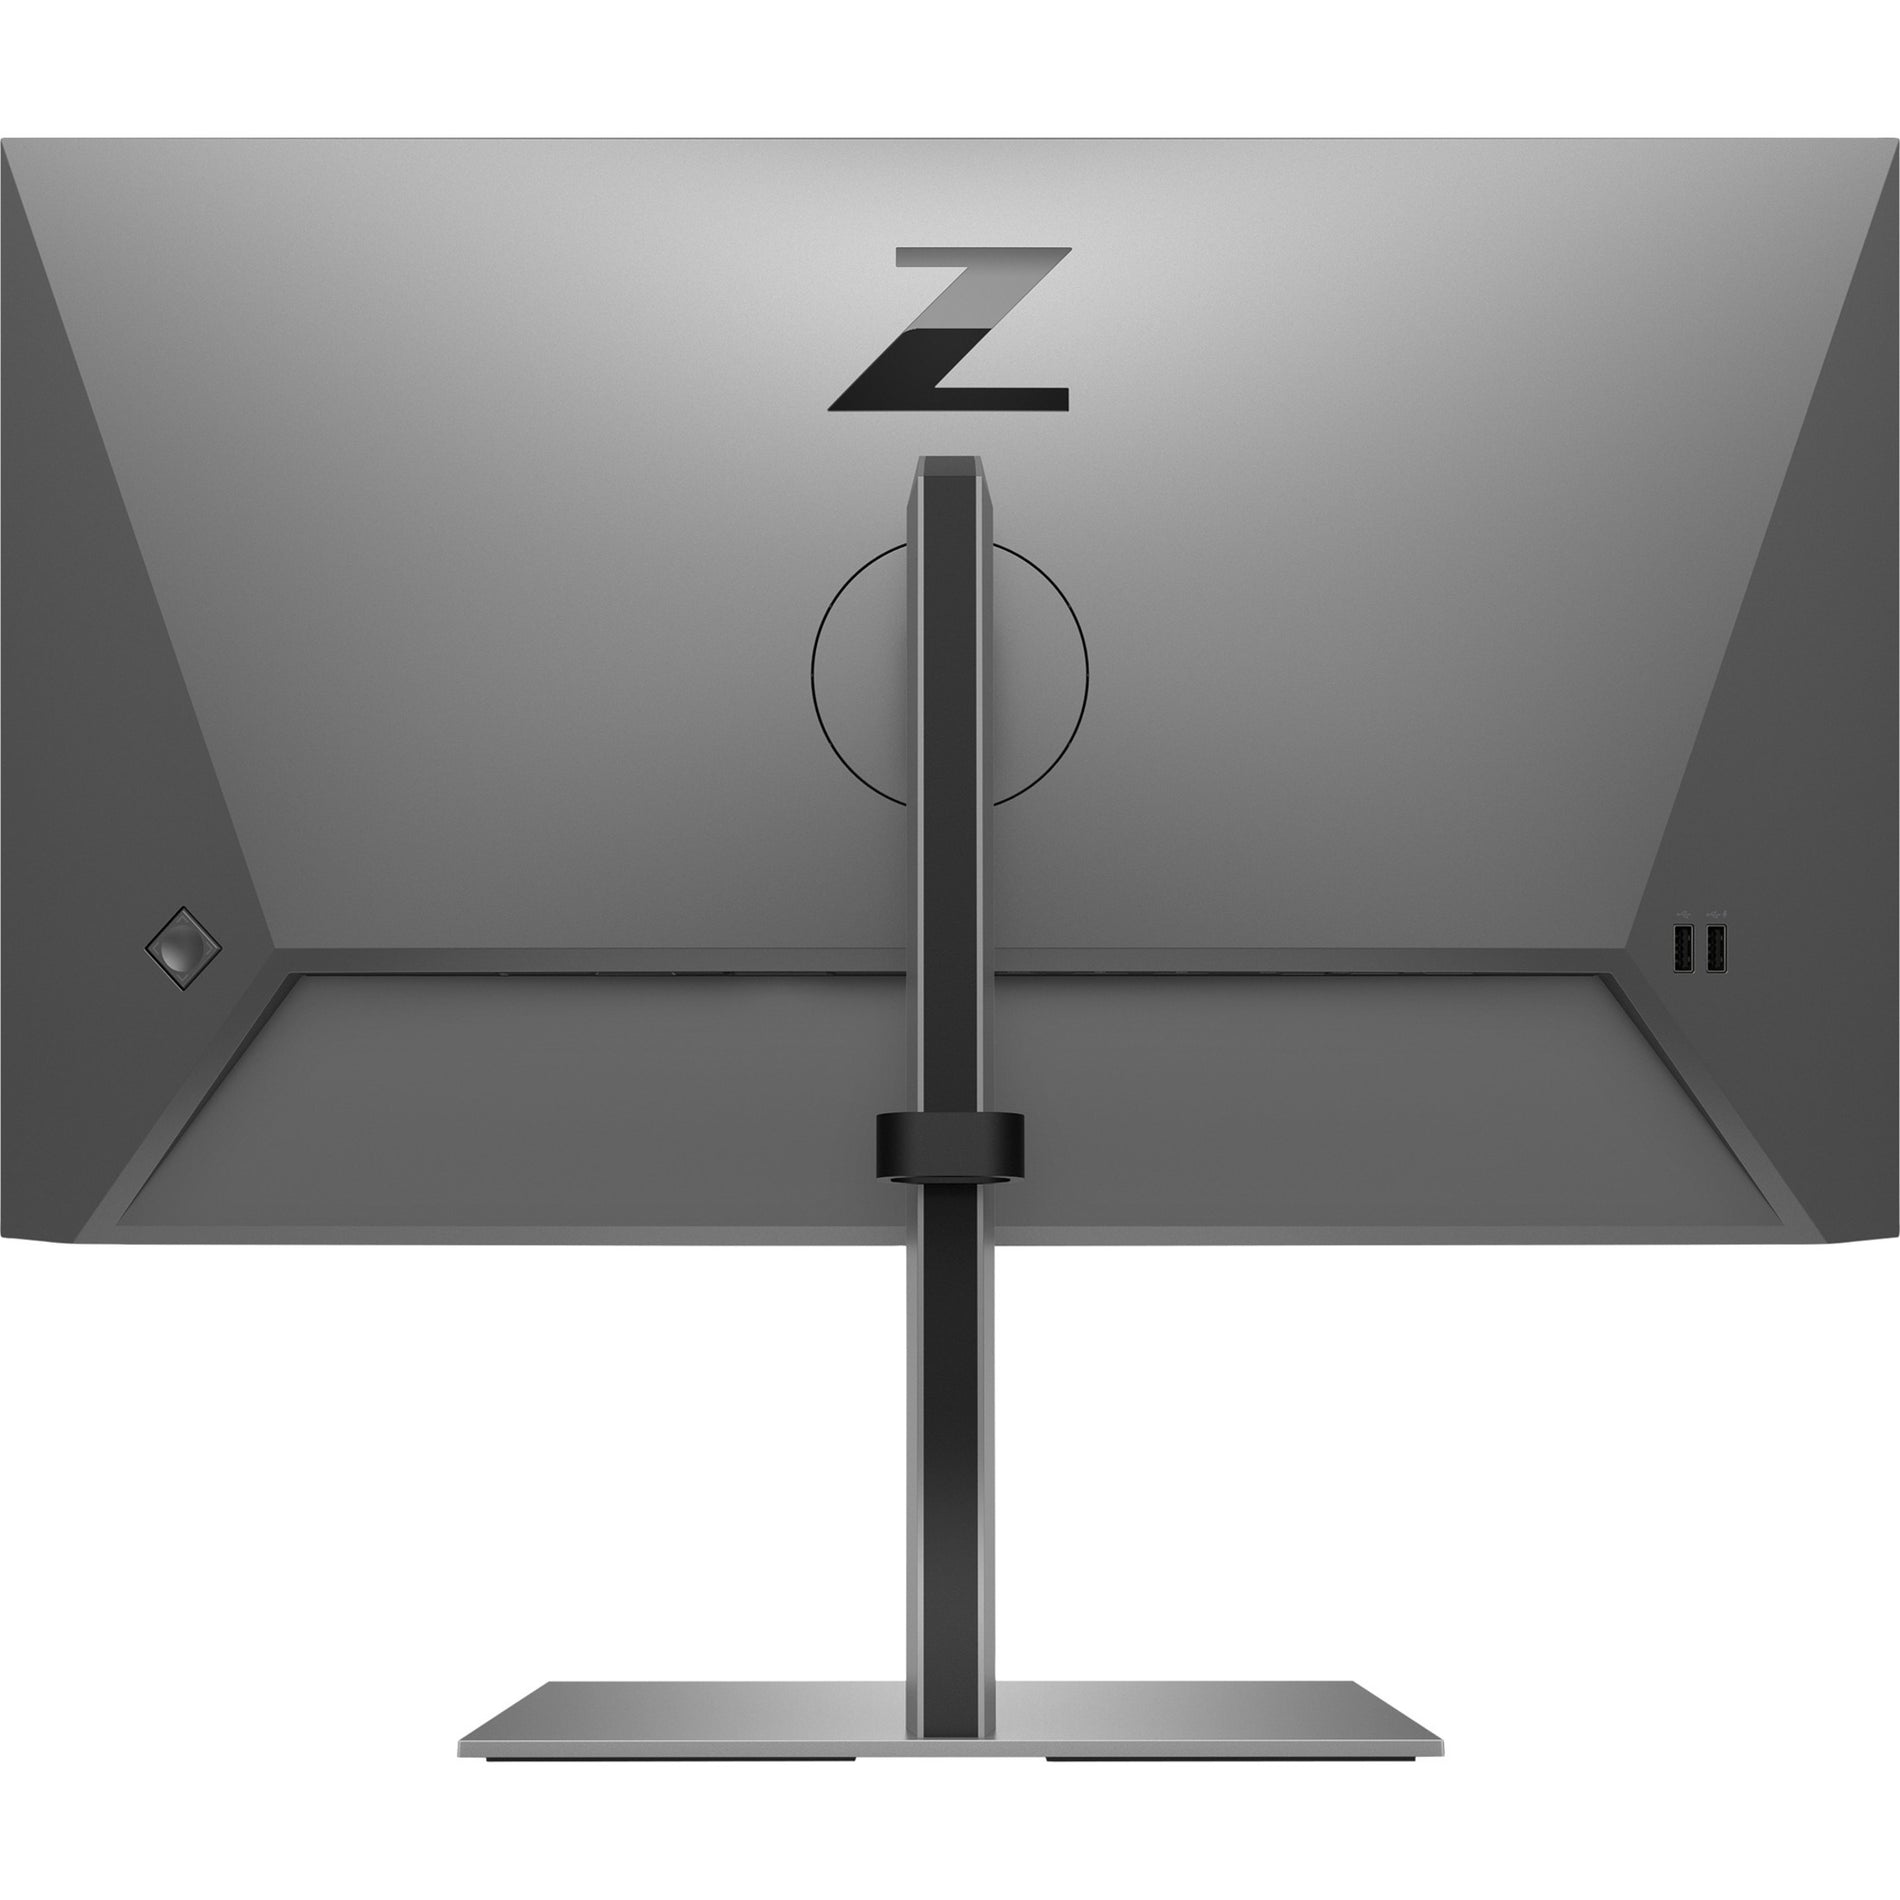 HP Z24f G3 23.8" Full HD LCD Monitor, Silver - 300 Nit, 1920 x 1080, 16:9